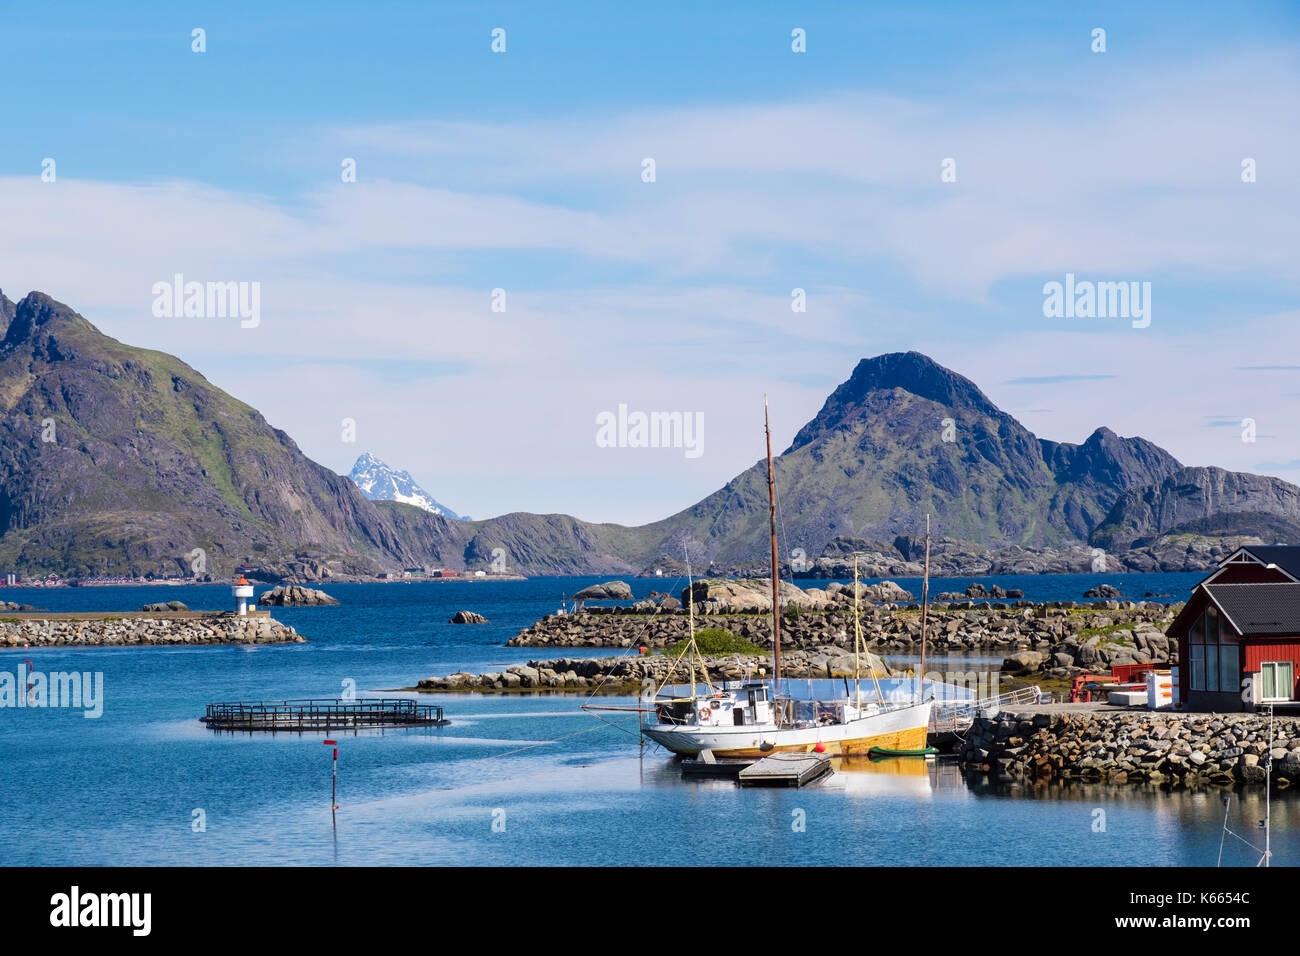 Vue sur port à bateau en bois amarré dans village de pêcheurs. Ballstad, Vestvågøya island, îles Lofoten, Nordland, Norvège, Scandinavie Banque D'Images